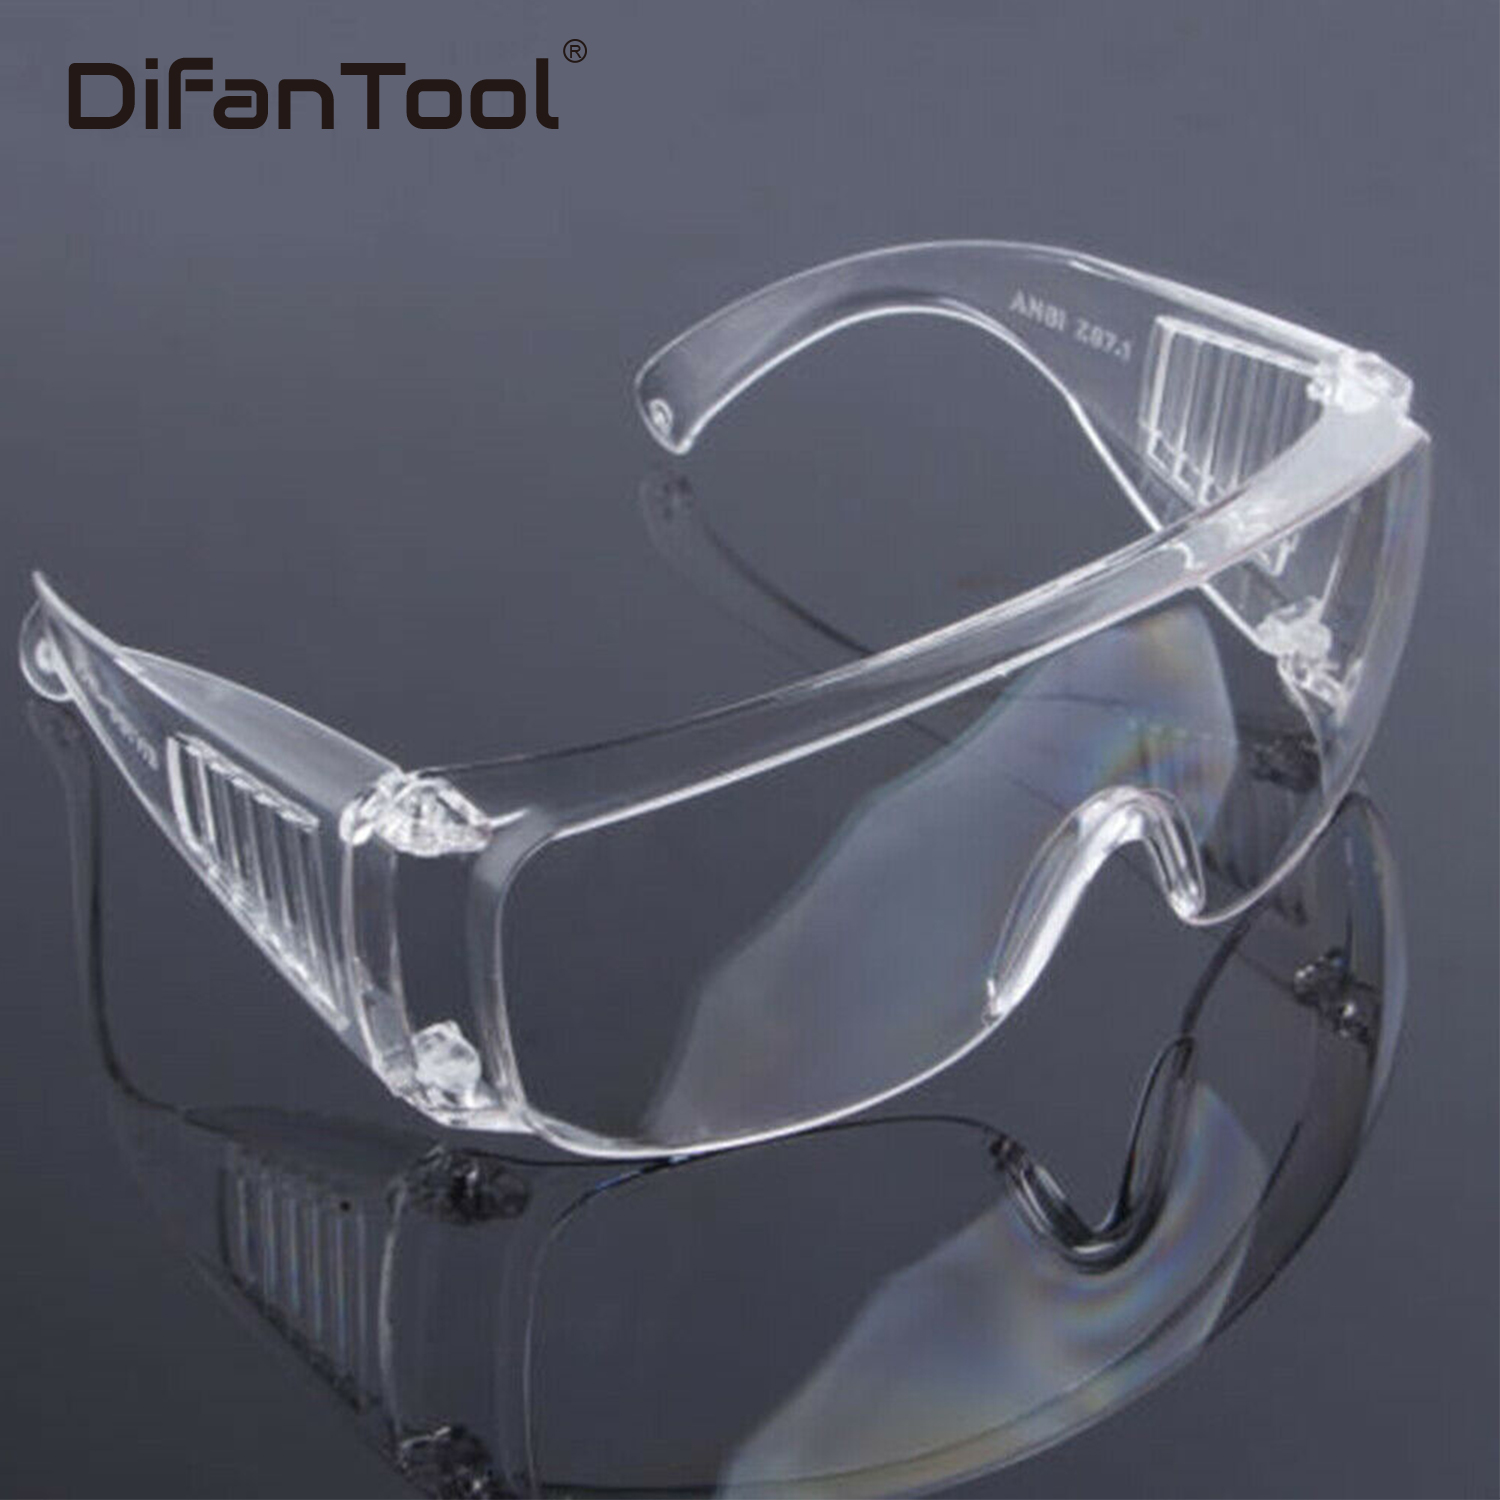 Тест защитных очков. Очки защитные spectacles cr01, transparent. Очк304 (о-13011) очки защитные открытые (прозрачные). Очки защитные clean+safe оранжевые HB-s03aor. Очки hogies стоматологические.